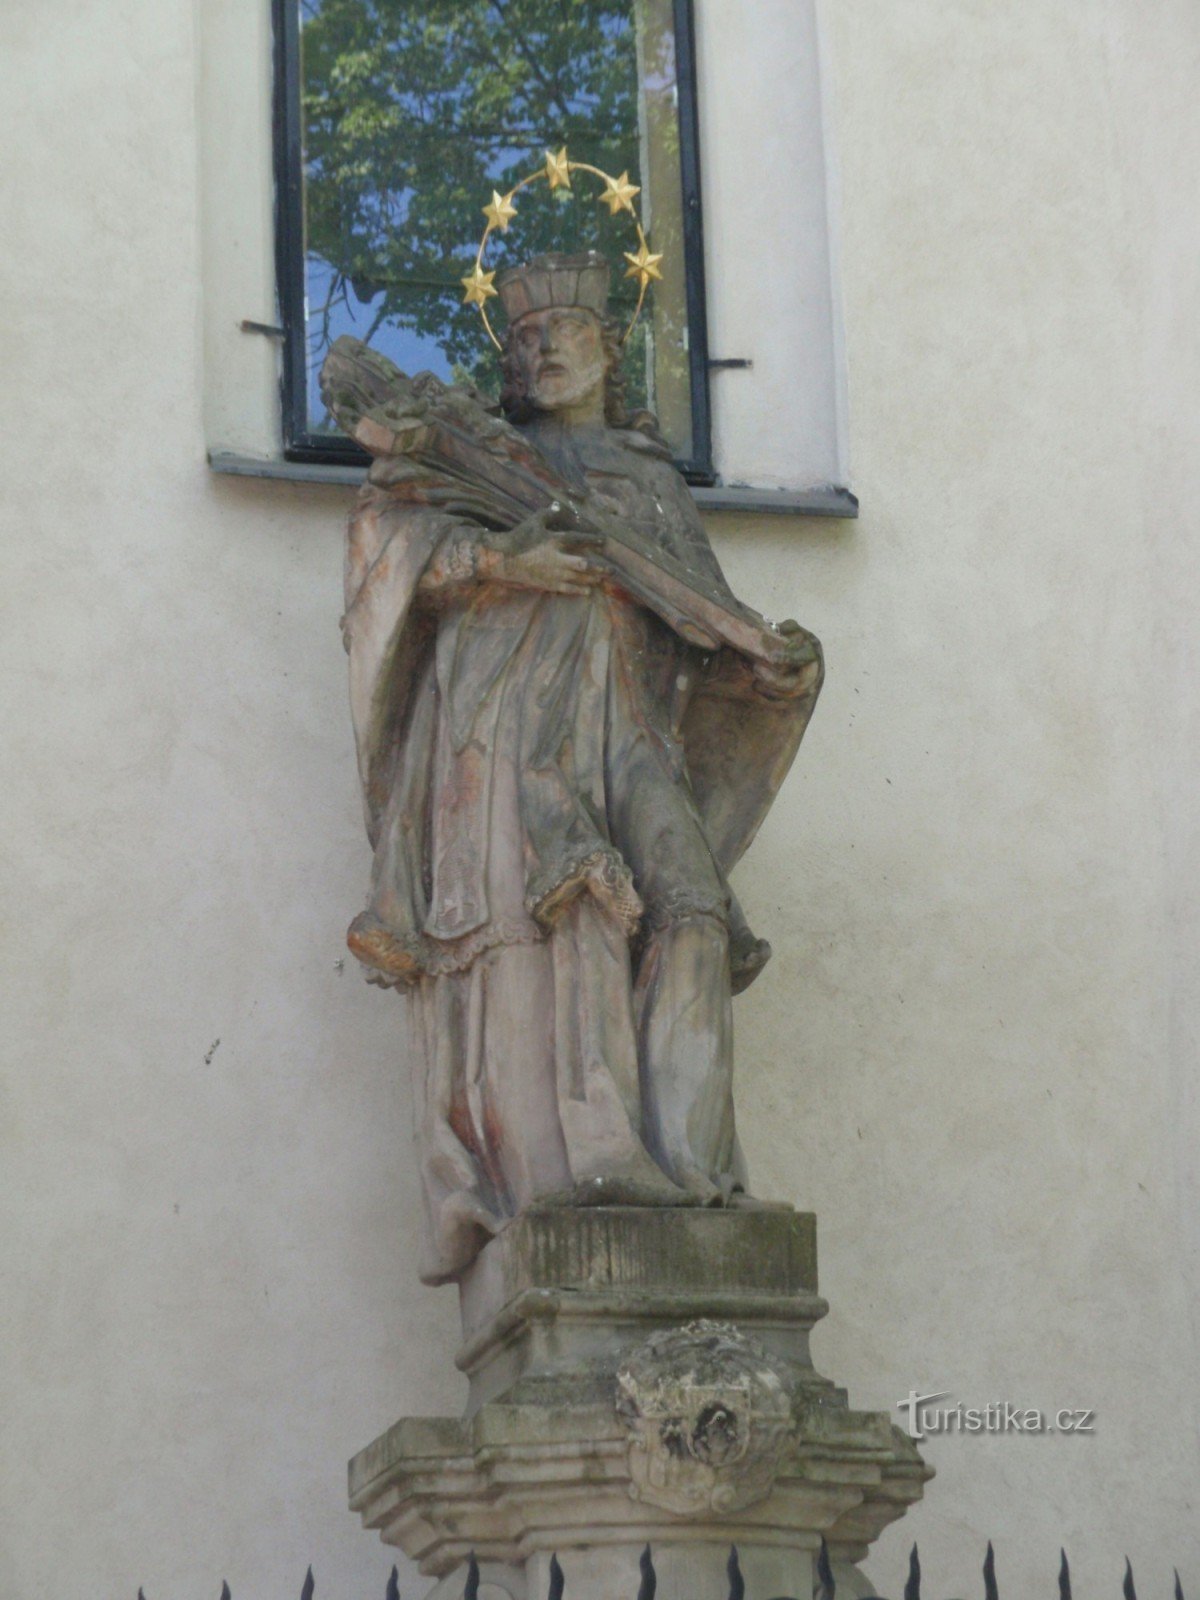 Città Nuova in Moravia - statua di S. Jan Nepomucký